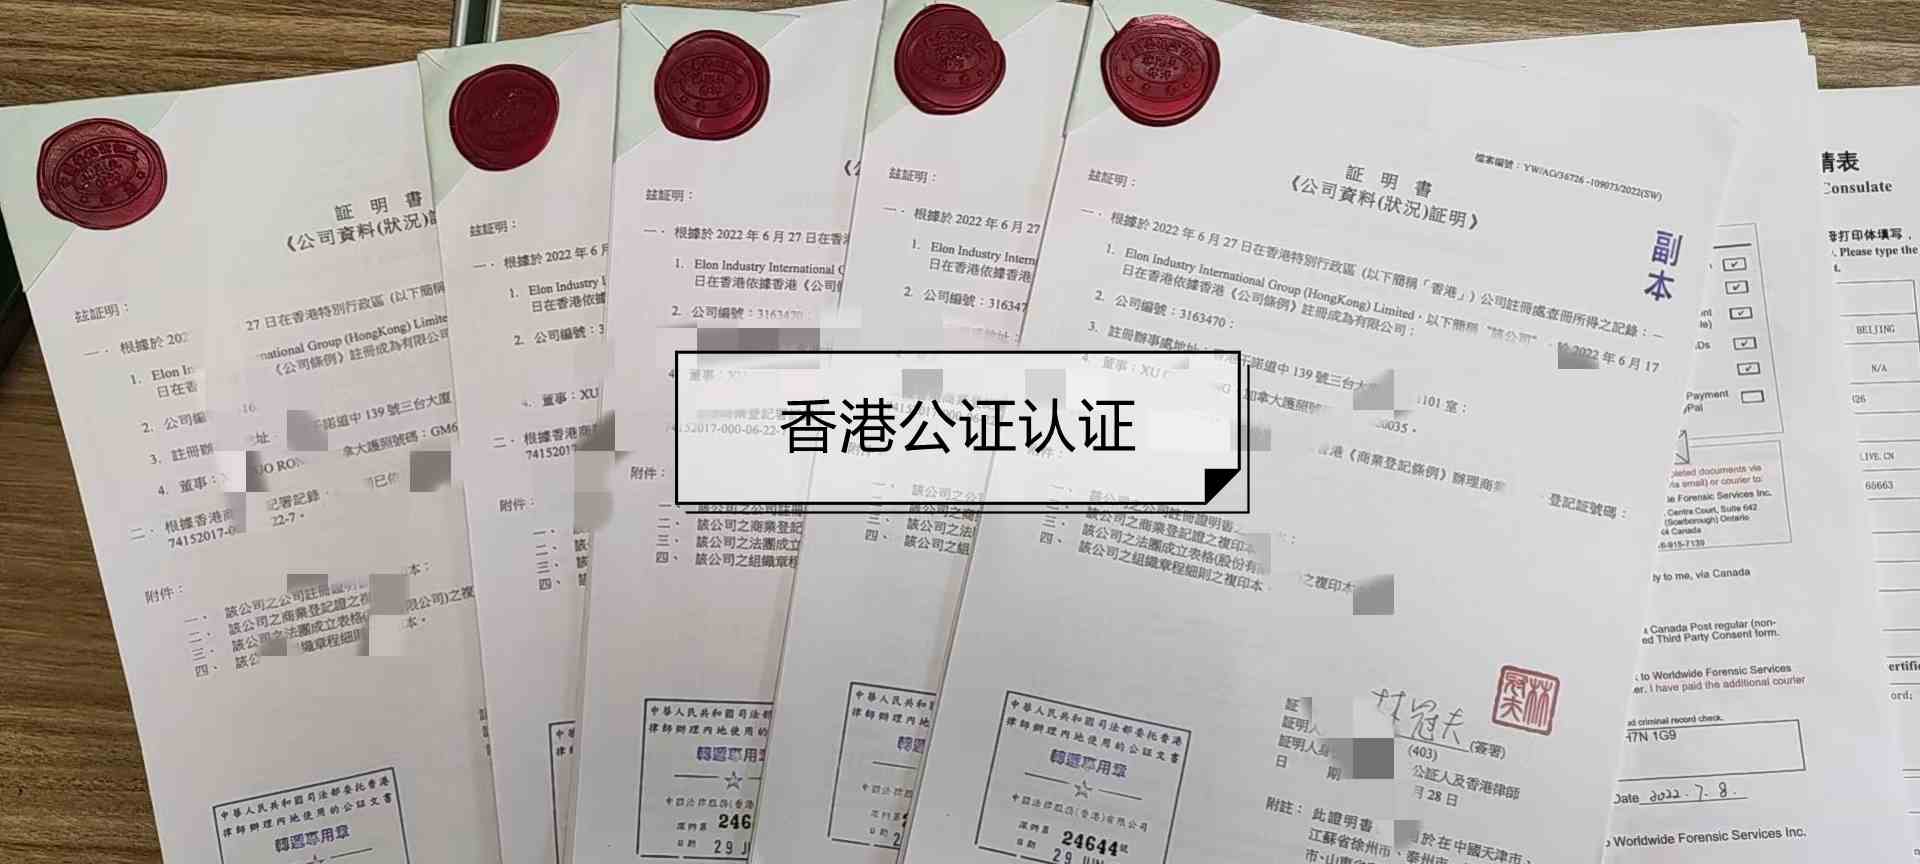 子女是香港身份要怎么办理放弃继承父母遗产声明书公证?